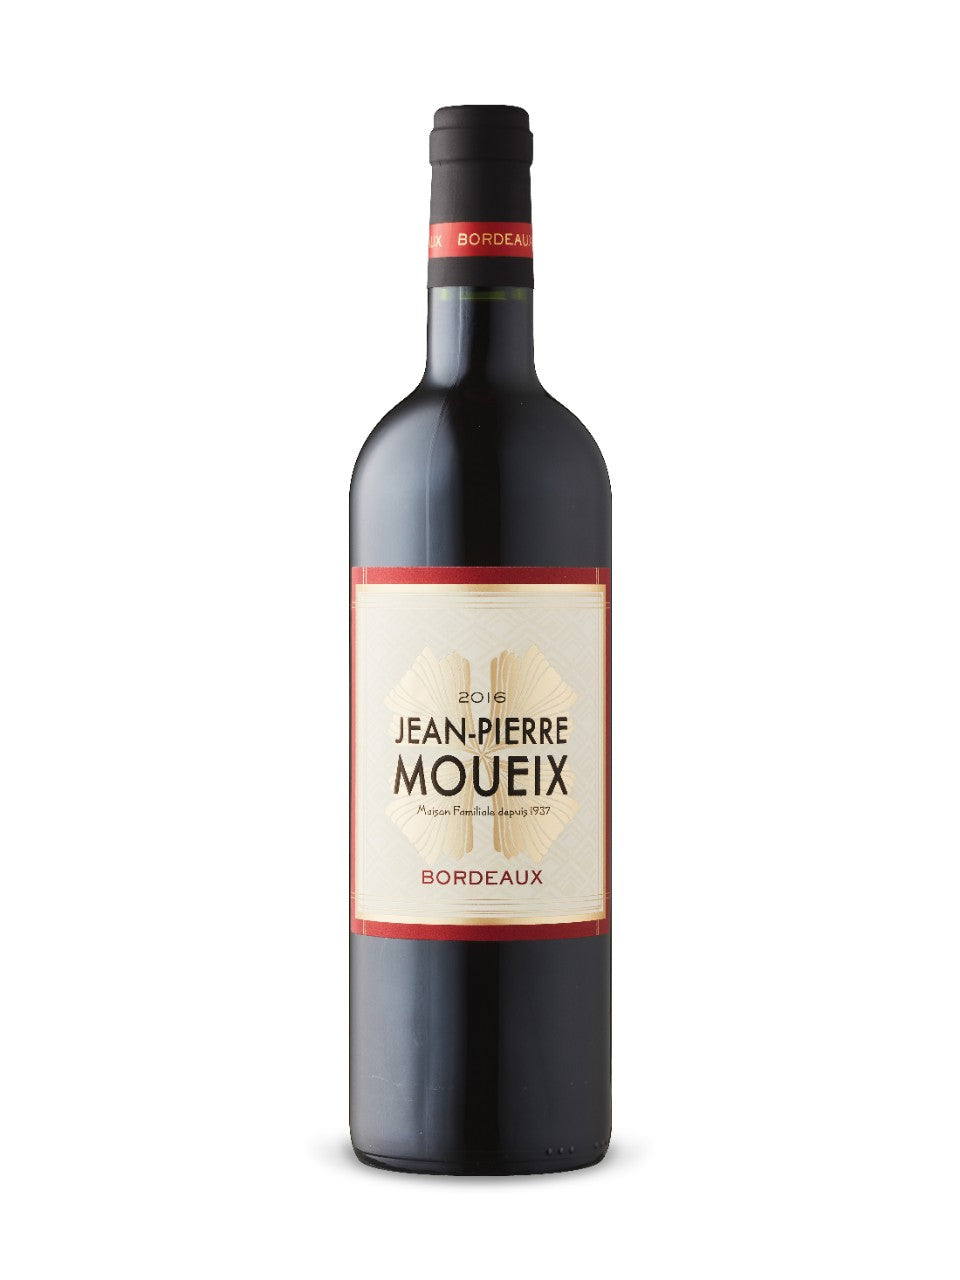 Jean-Pierre Moueix Bordeaux 2018 Merlot Blend 750 ml bottle VINTAGES